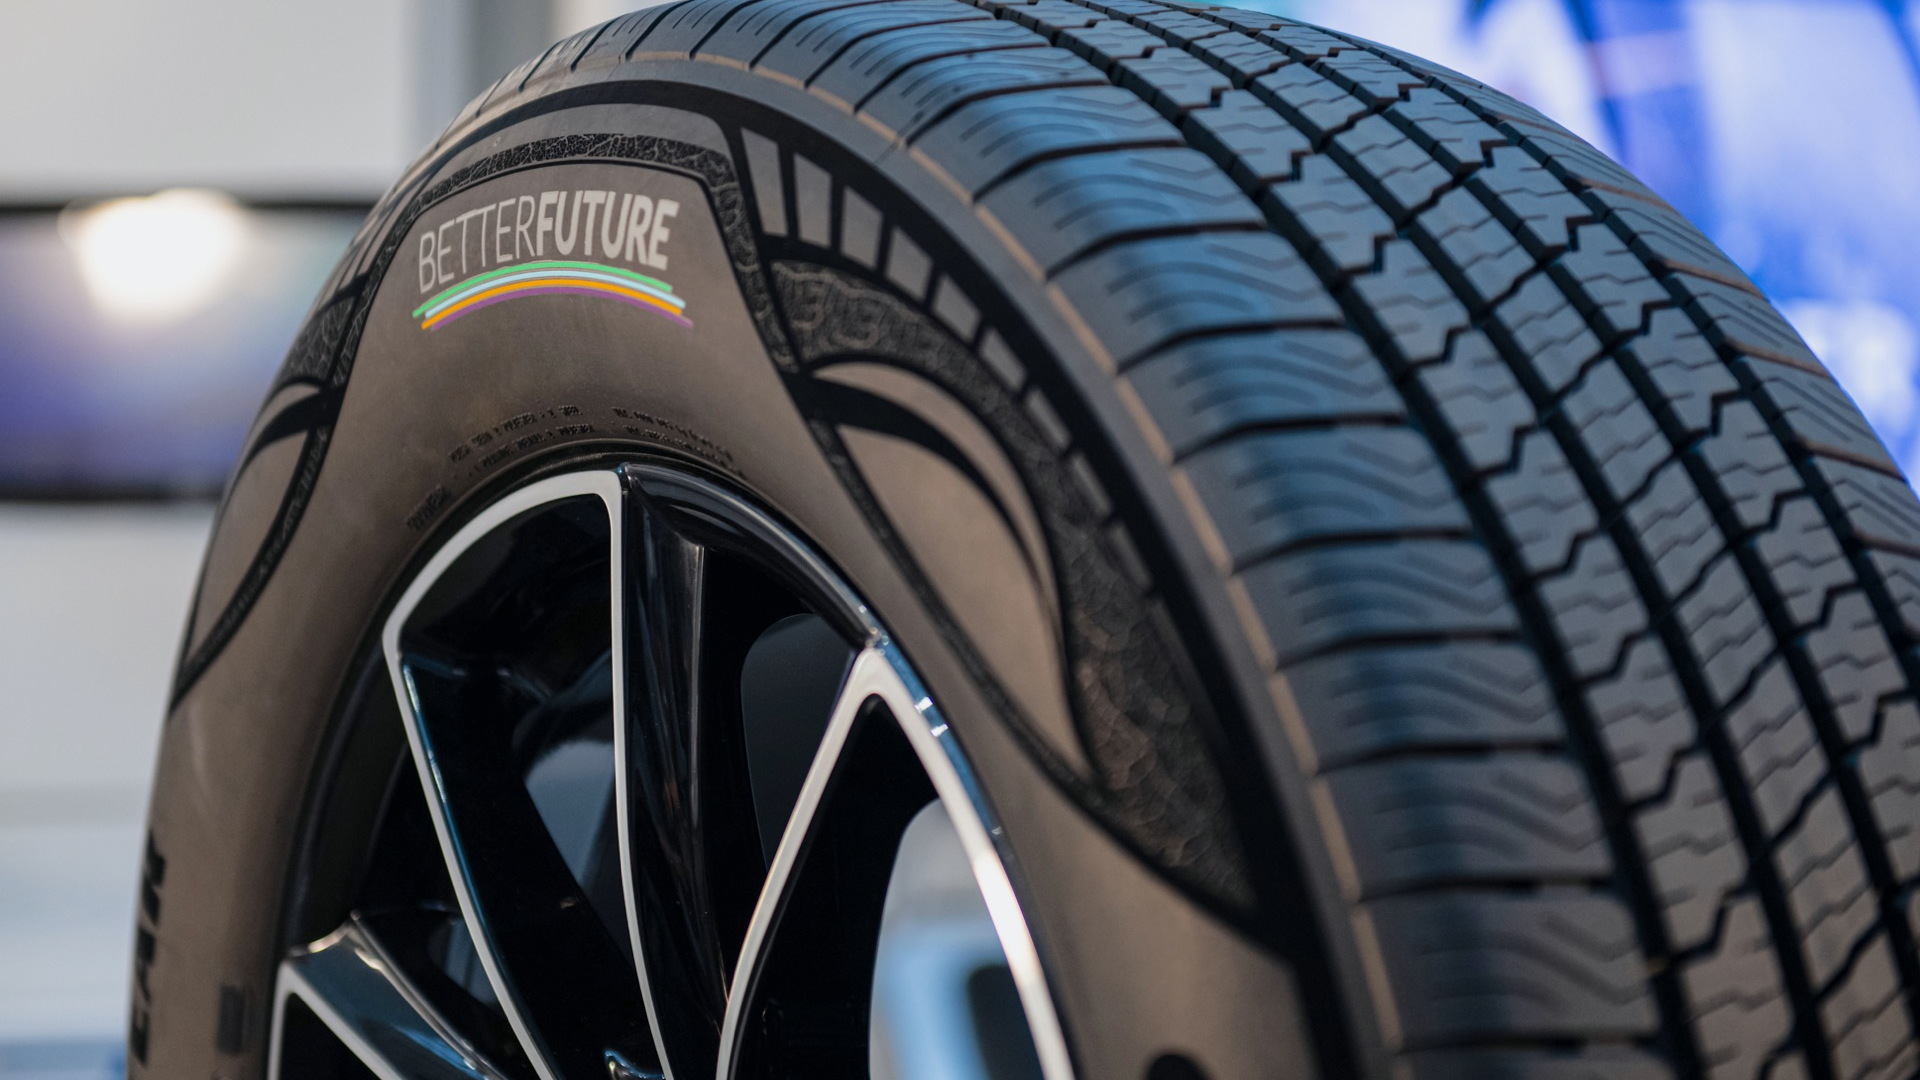 Goodyear 90% sustainable tire